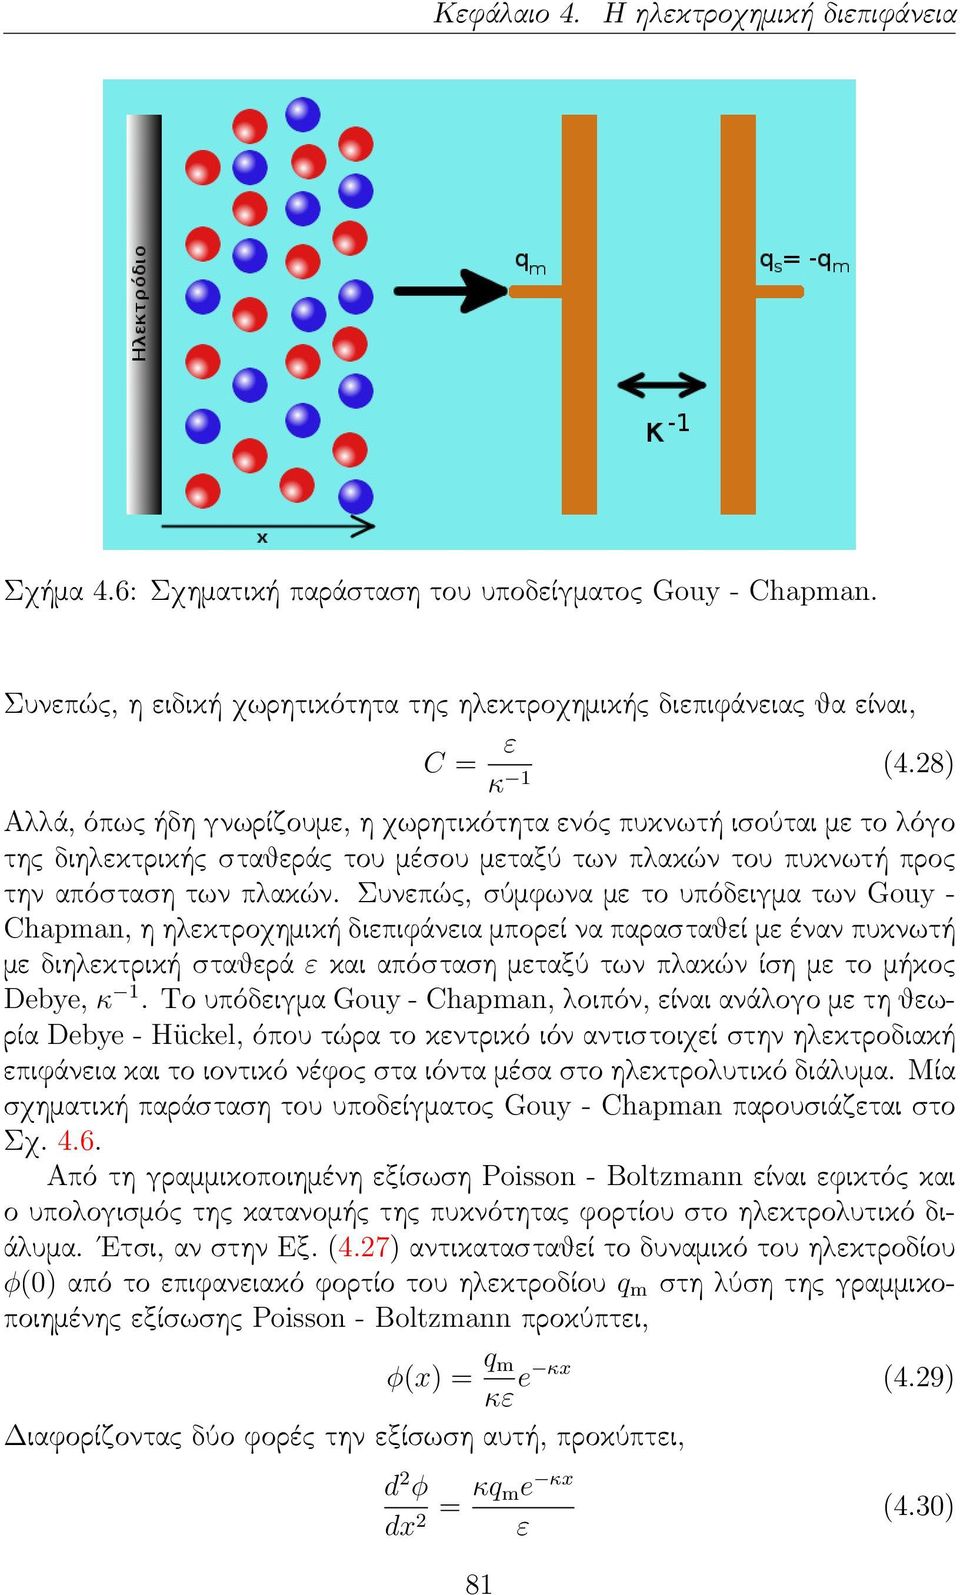 Συνεπώς, σύμφωνα με το υπόδειγμα των Gouy - Chapman, η ηλεκτροχημική διεπιφάνεια μπορεί να παρασταθεί με έναν πυκνωτή με διηλεκτρική σταθερά ε και απόσταση μεταξύ των πλακών ίση με το μήκος Debye, κ